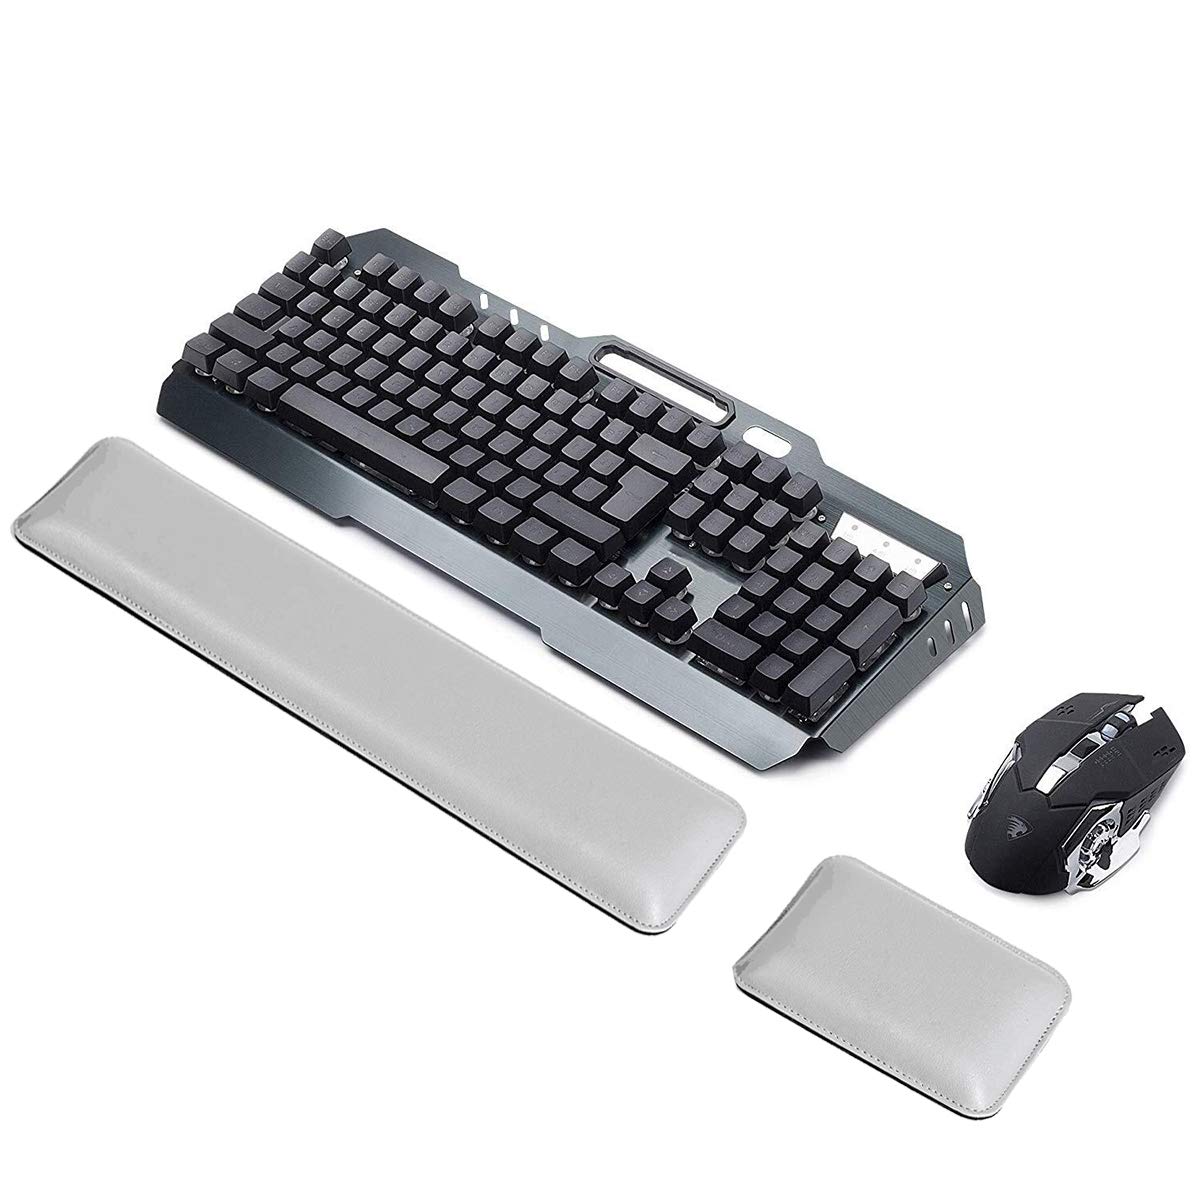 ASEOK Handgelenkauflage aus PU-Leder für Tastatur und Maus, ergonomisches Handgelenkkissen mit Memory-Gelschaum für Computer/Notebook/Laptop(weiß)